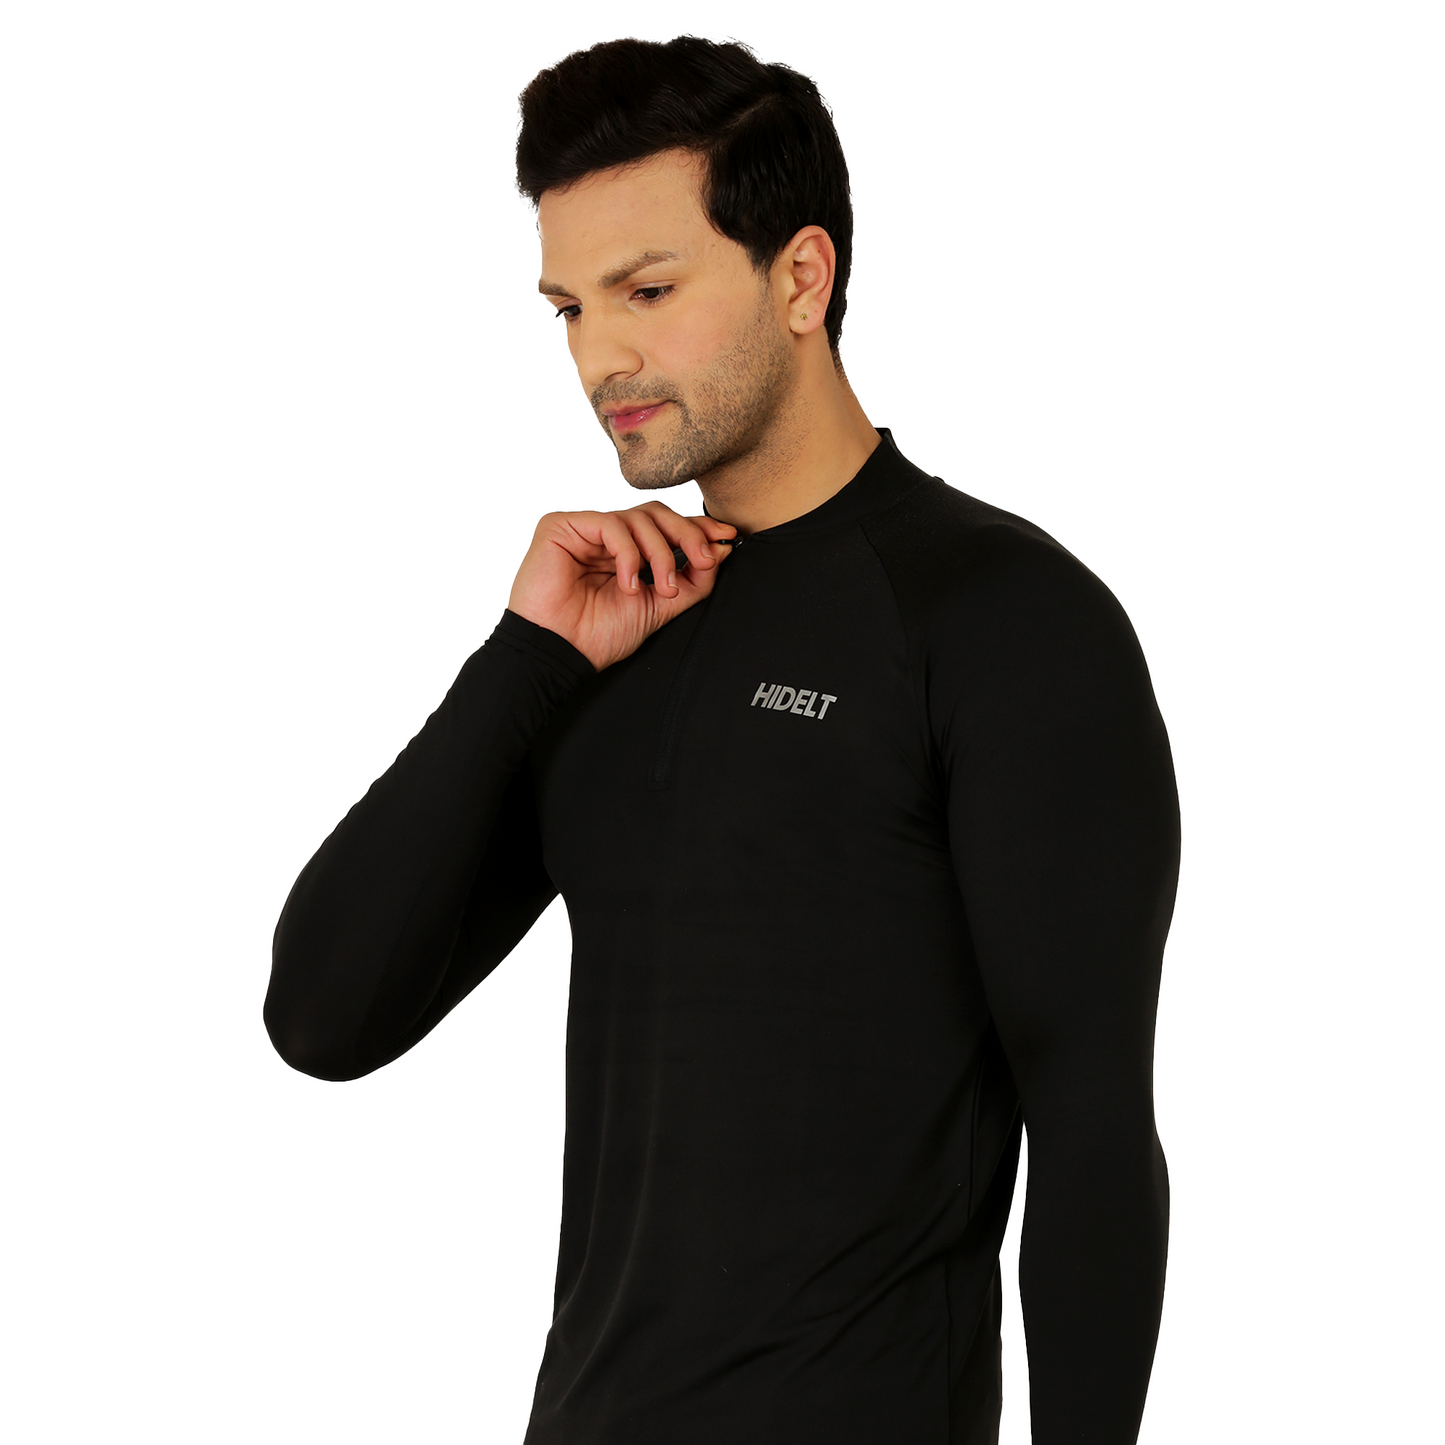 Men's Long Sleeve 1/4 Zipper Polyester Gym workout T-Shirt Black